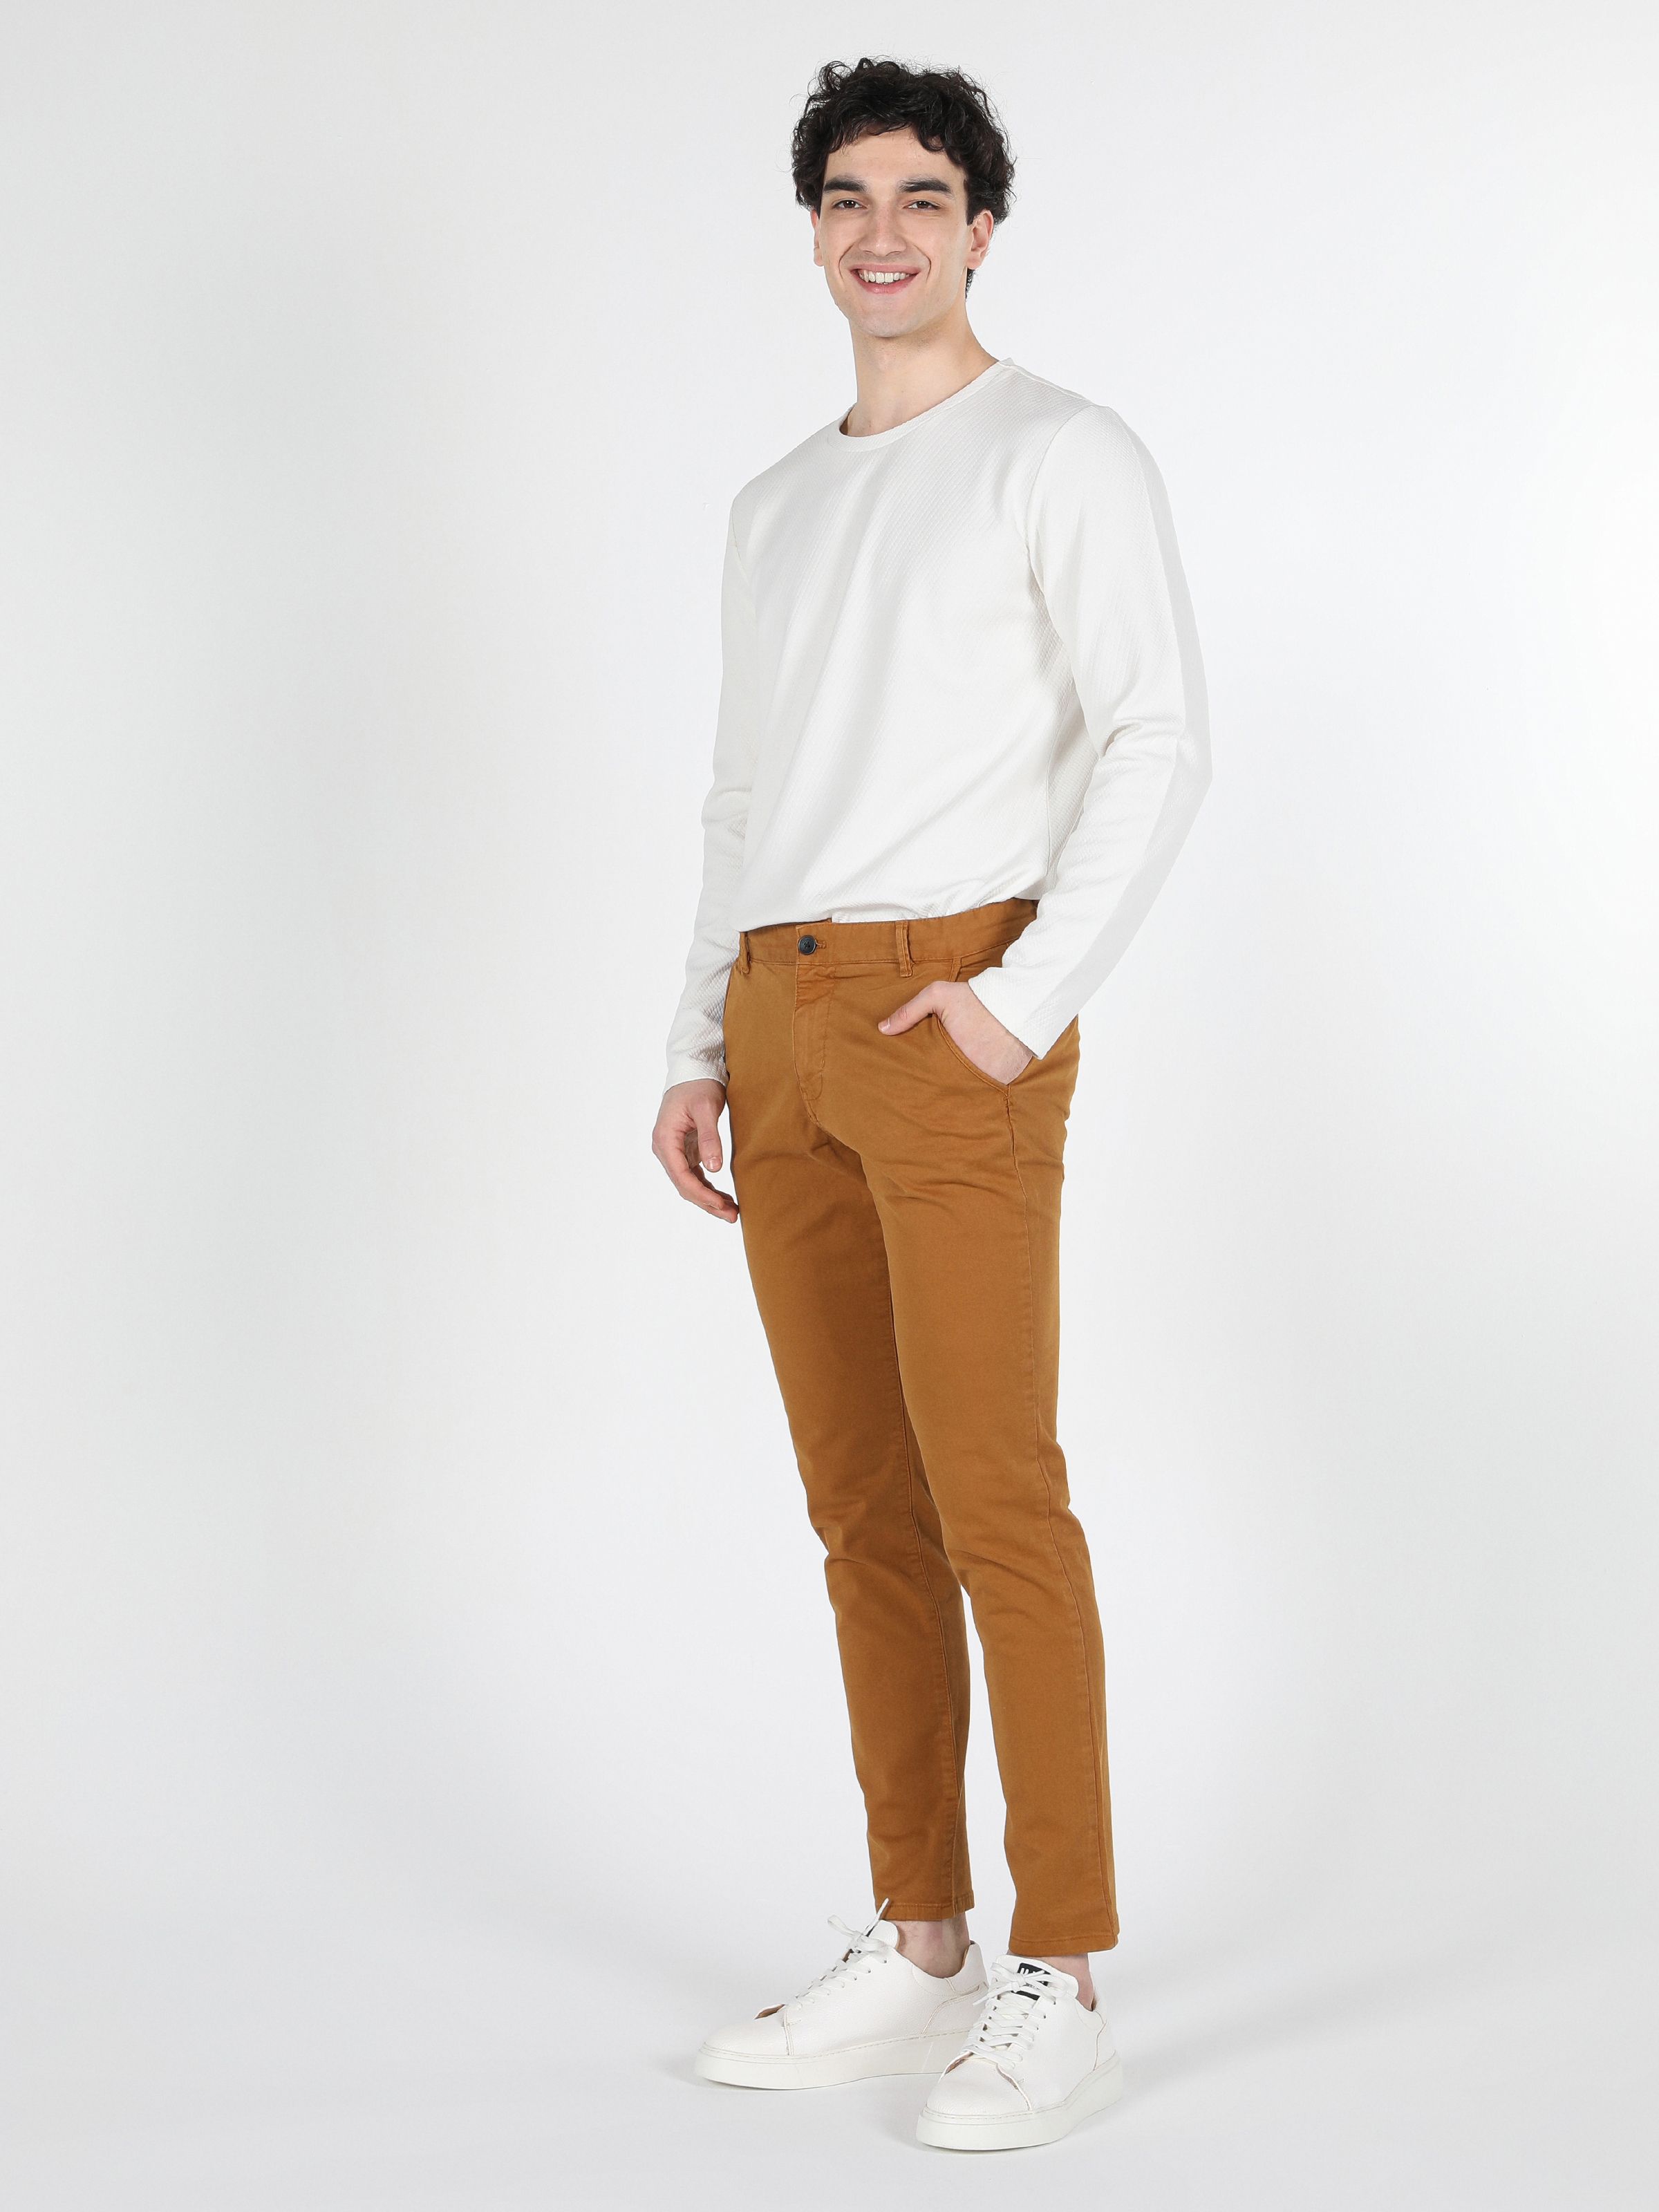 Afficher les détails de Pantalon Homme Jaune Coupe Slim Taille Moyenne Jambe Droite